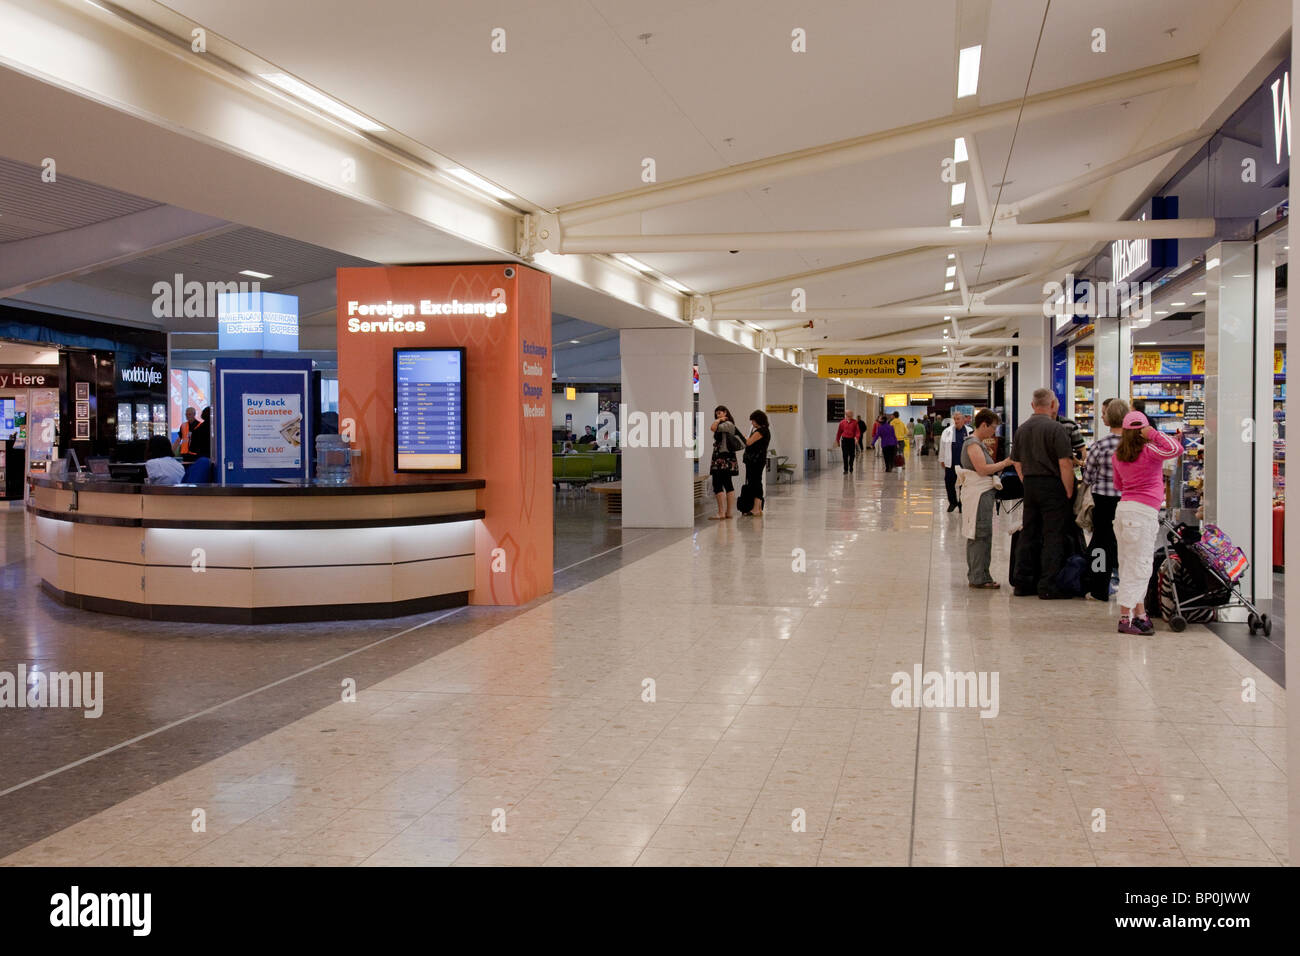 Main concourse am Flughafen Edinburgh. Schottland, Großbritannien, zeigt die Devisen- Schreibtisch, ein WHSmith Shop und einige Passagiere. Stockfoto